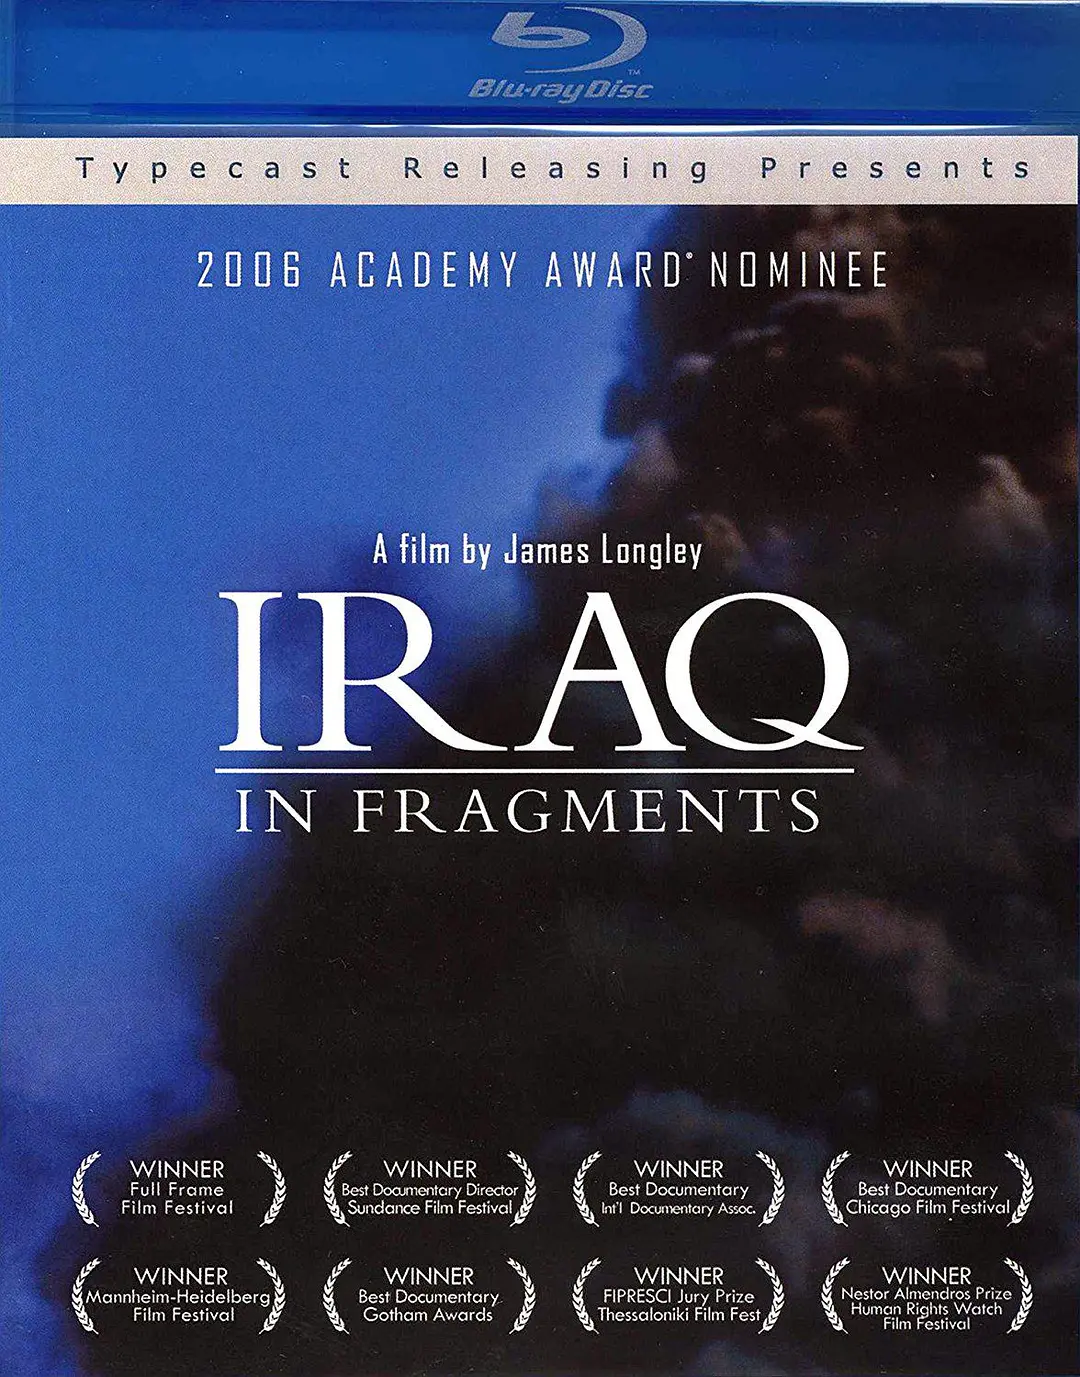 免费在线观看《伊拉克碎片》